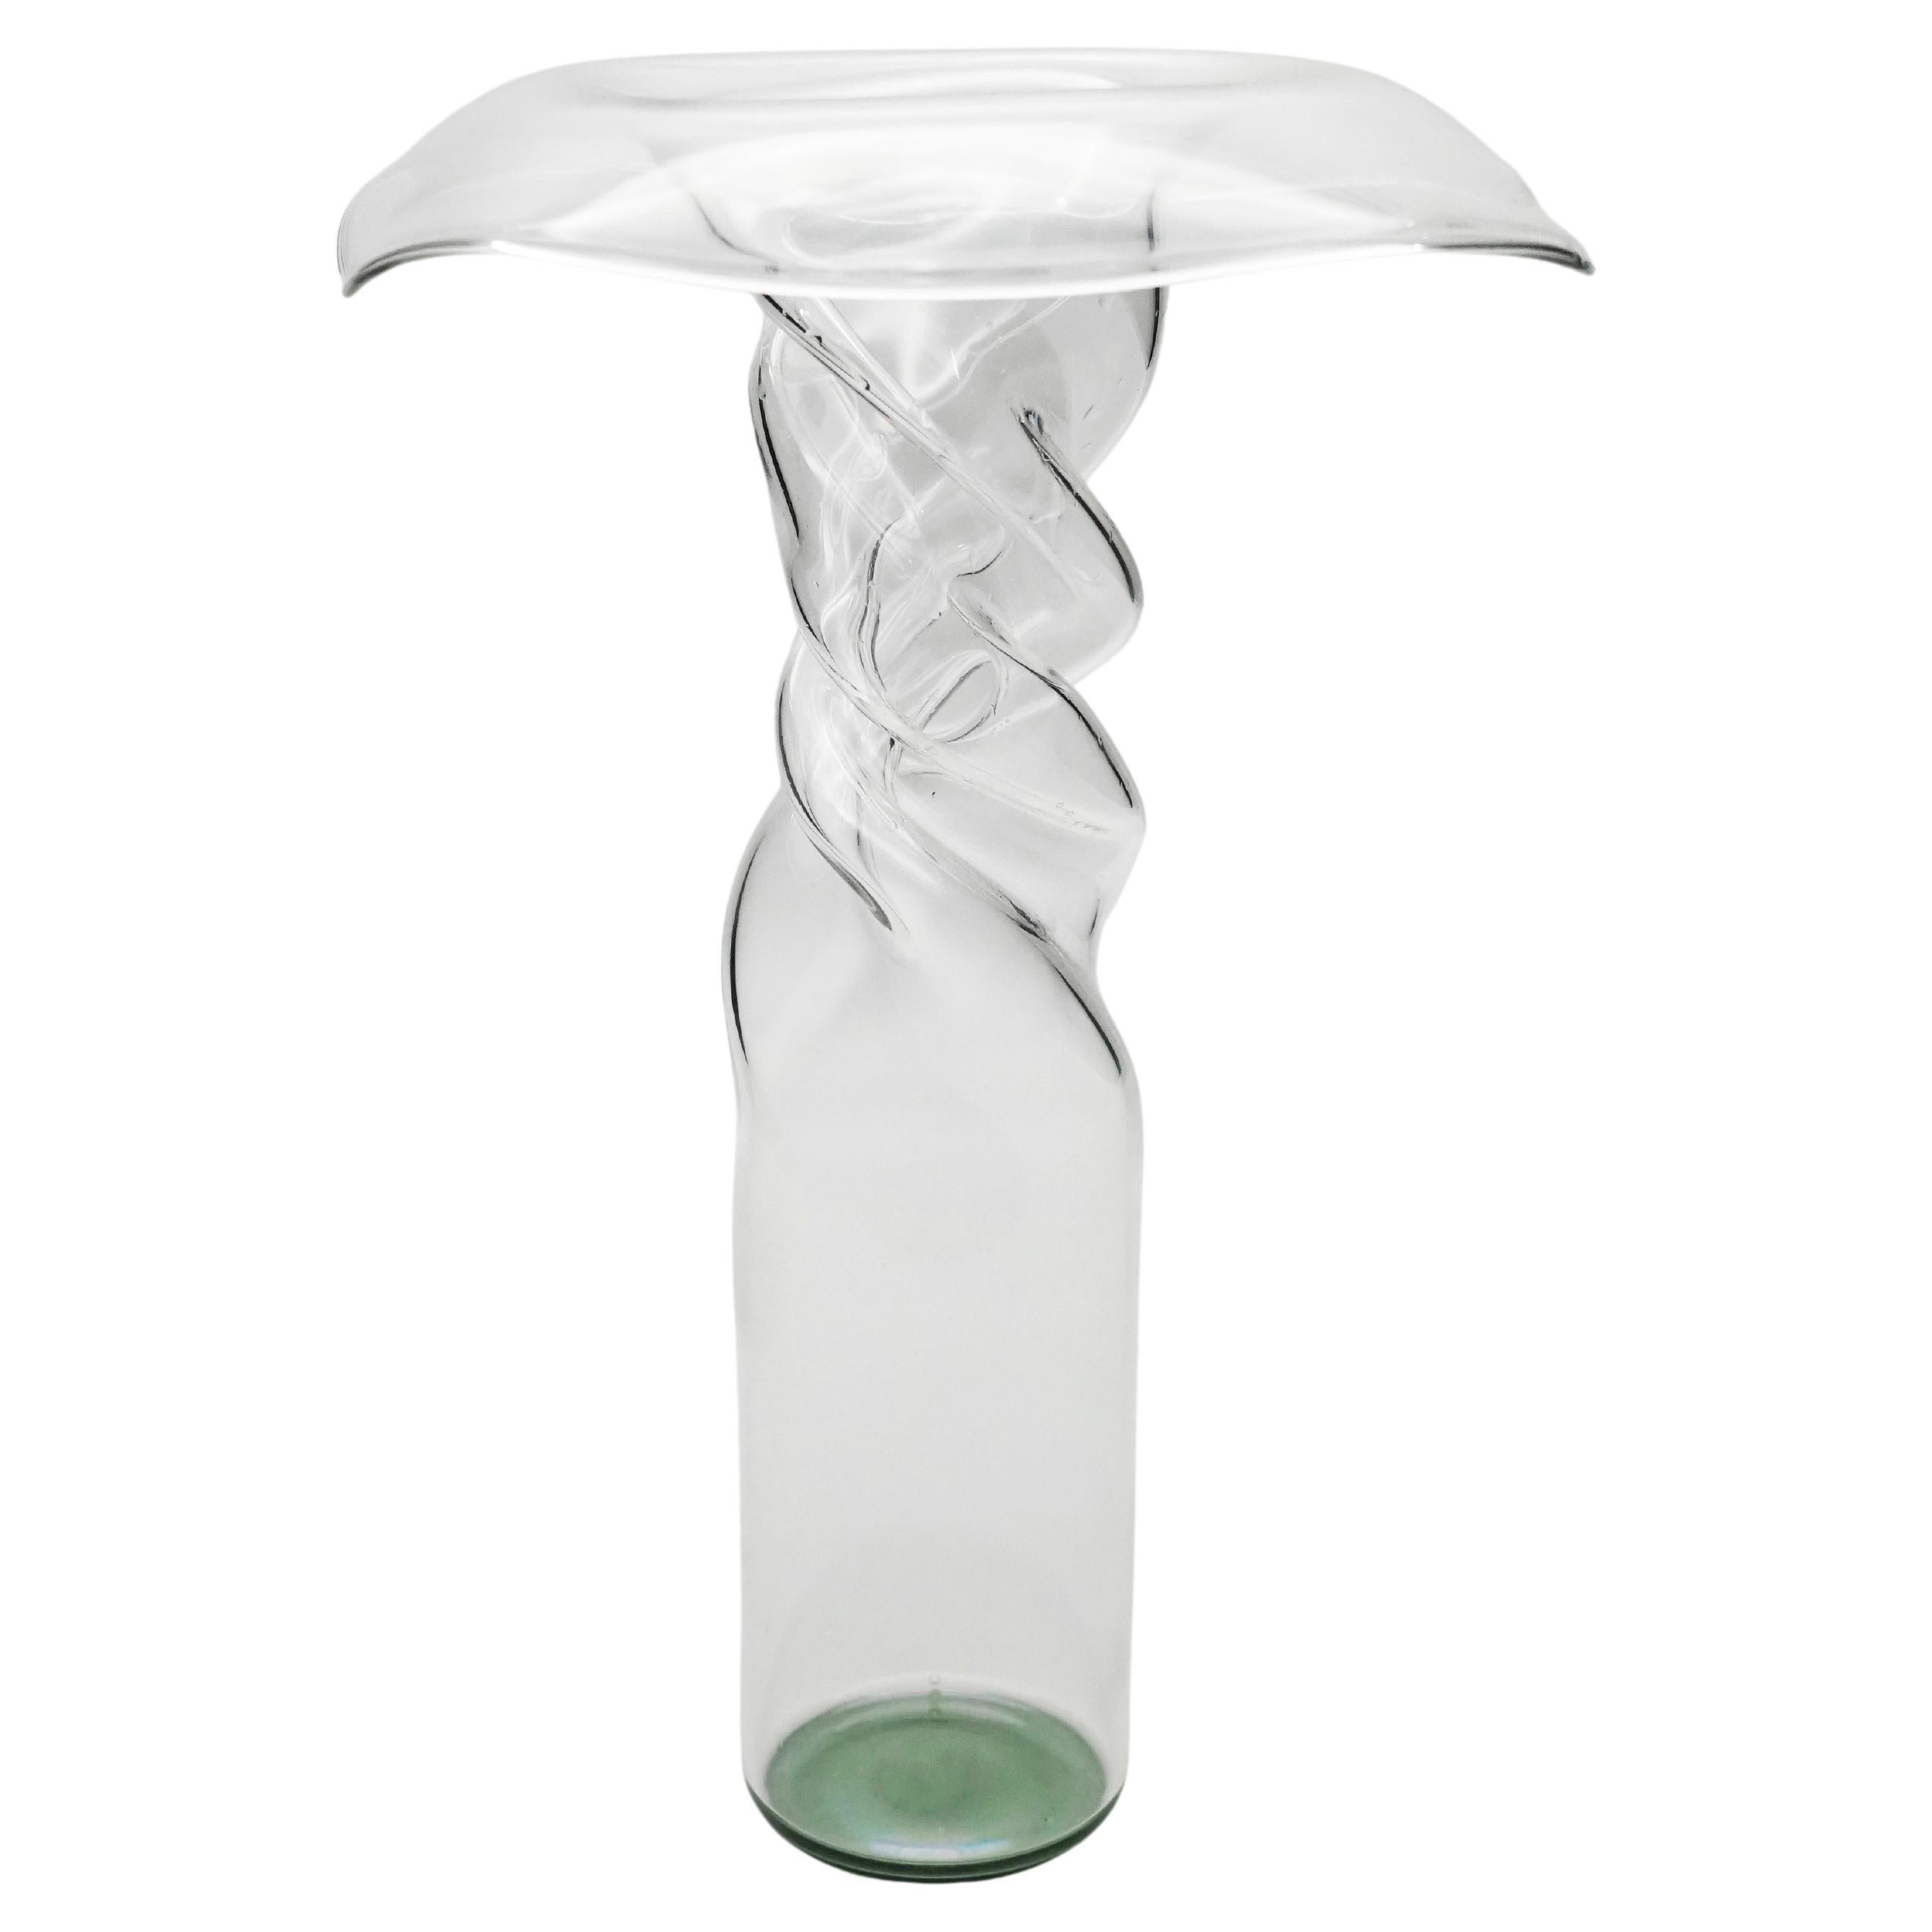 21st Century Handcrafted Glass Vase Poppy, Green Bottom, Kanz Architetti